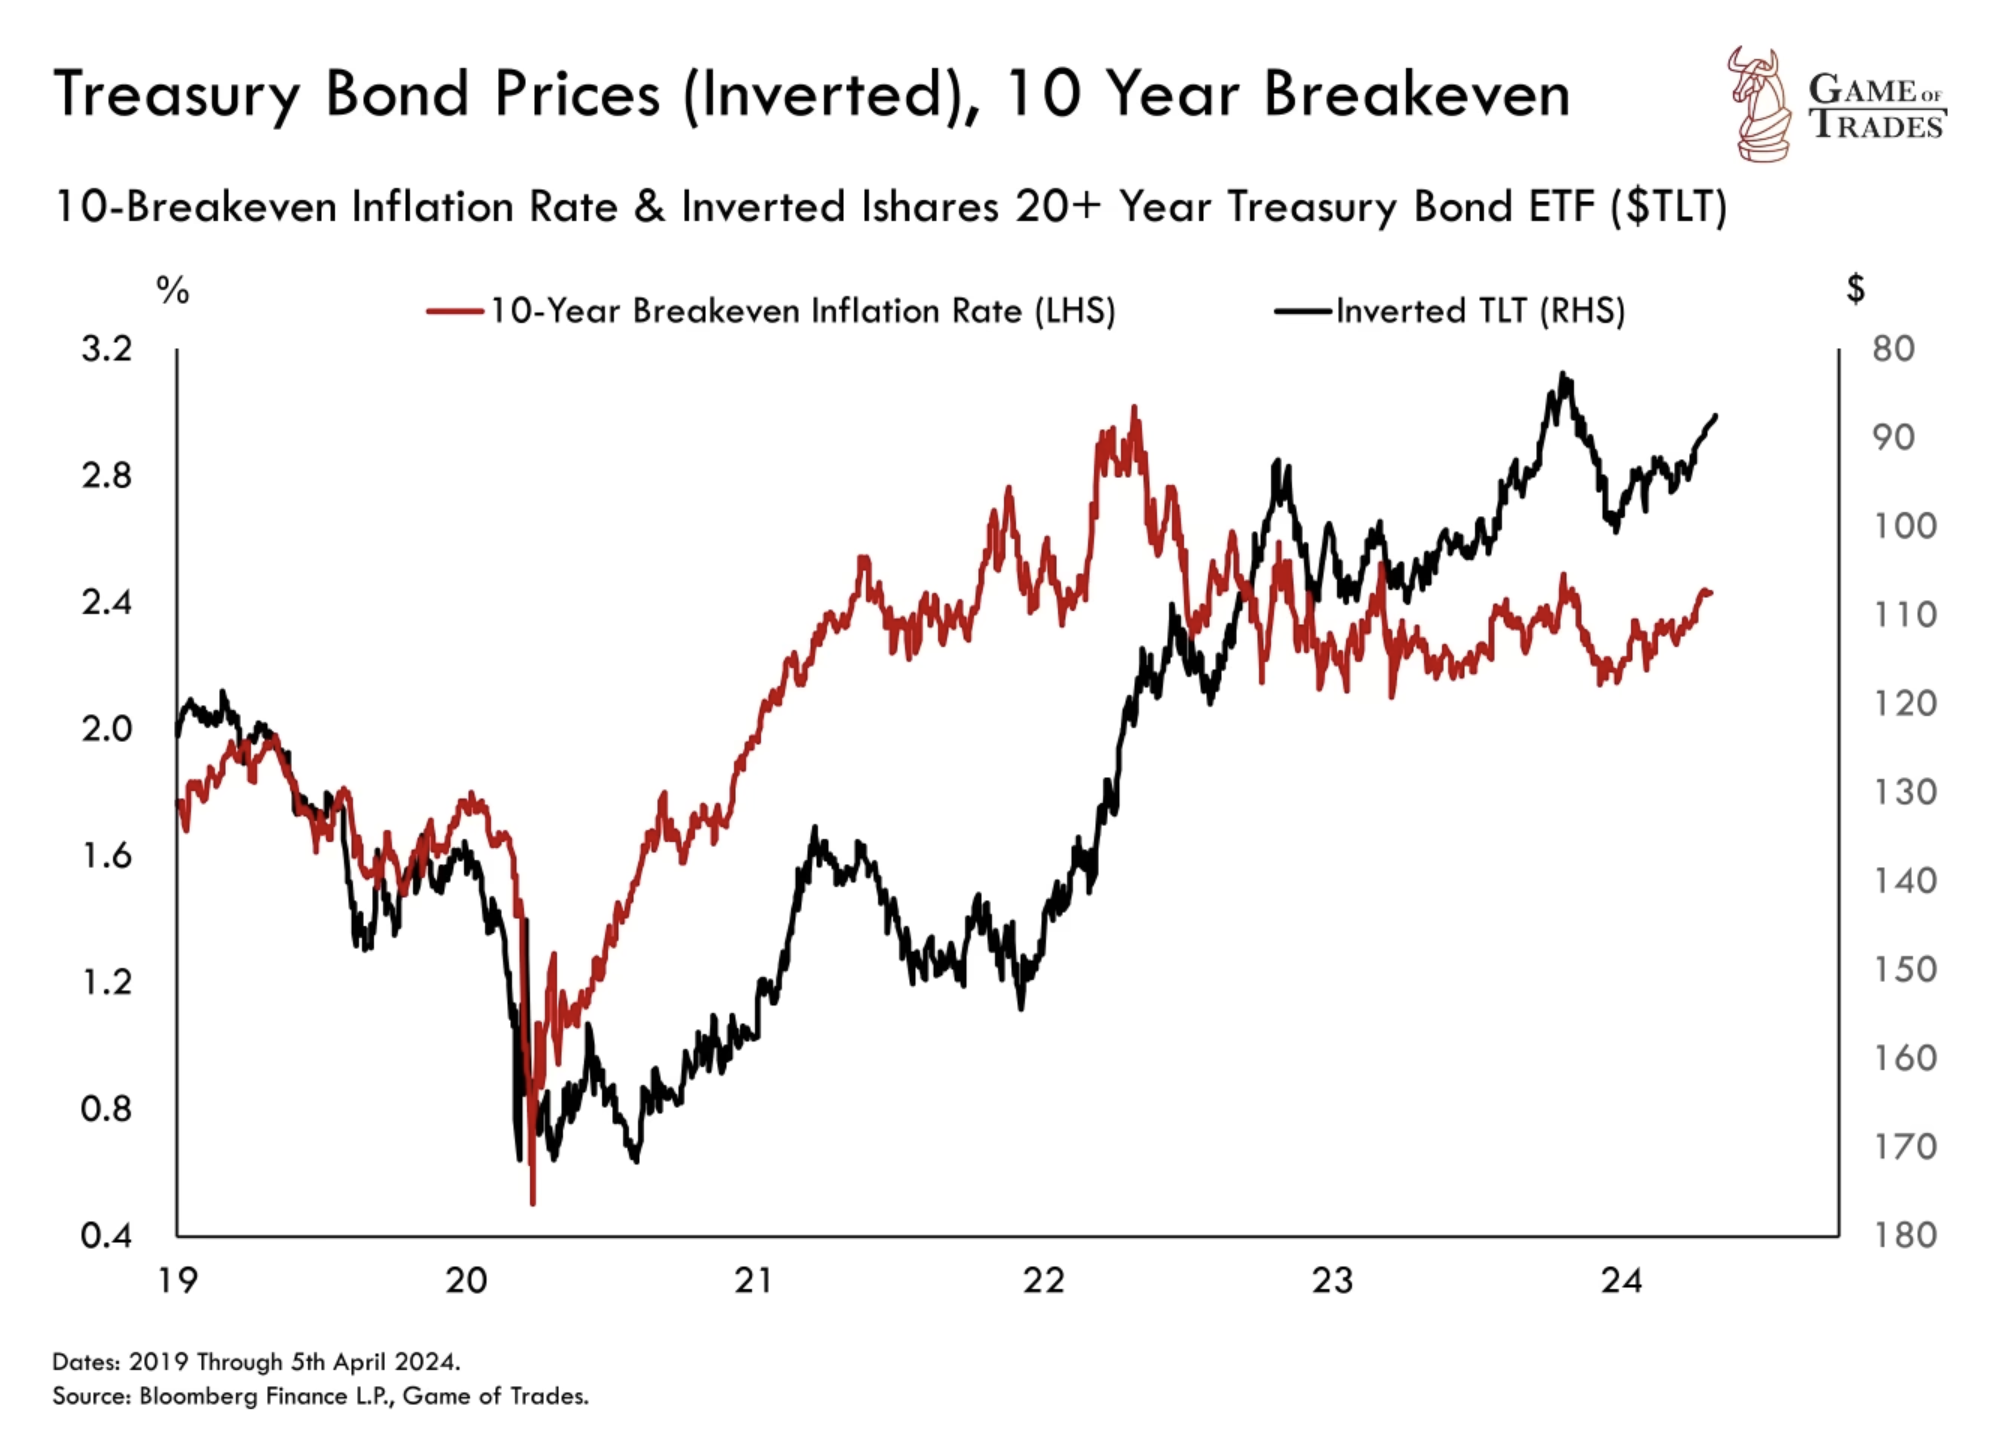 Treasury bond prices